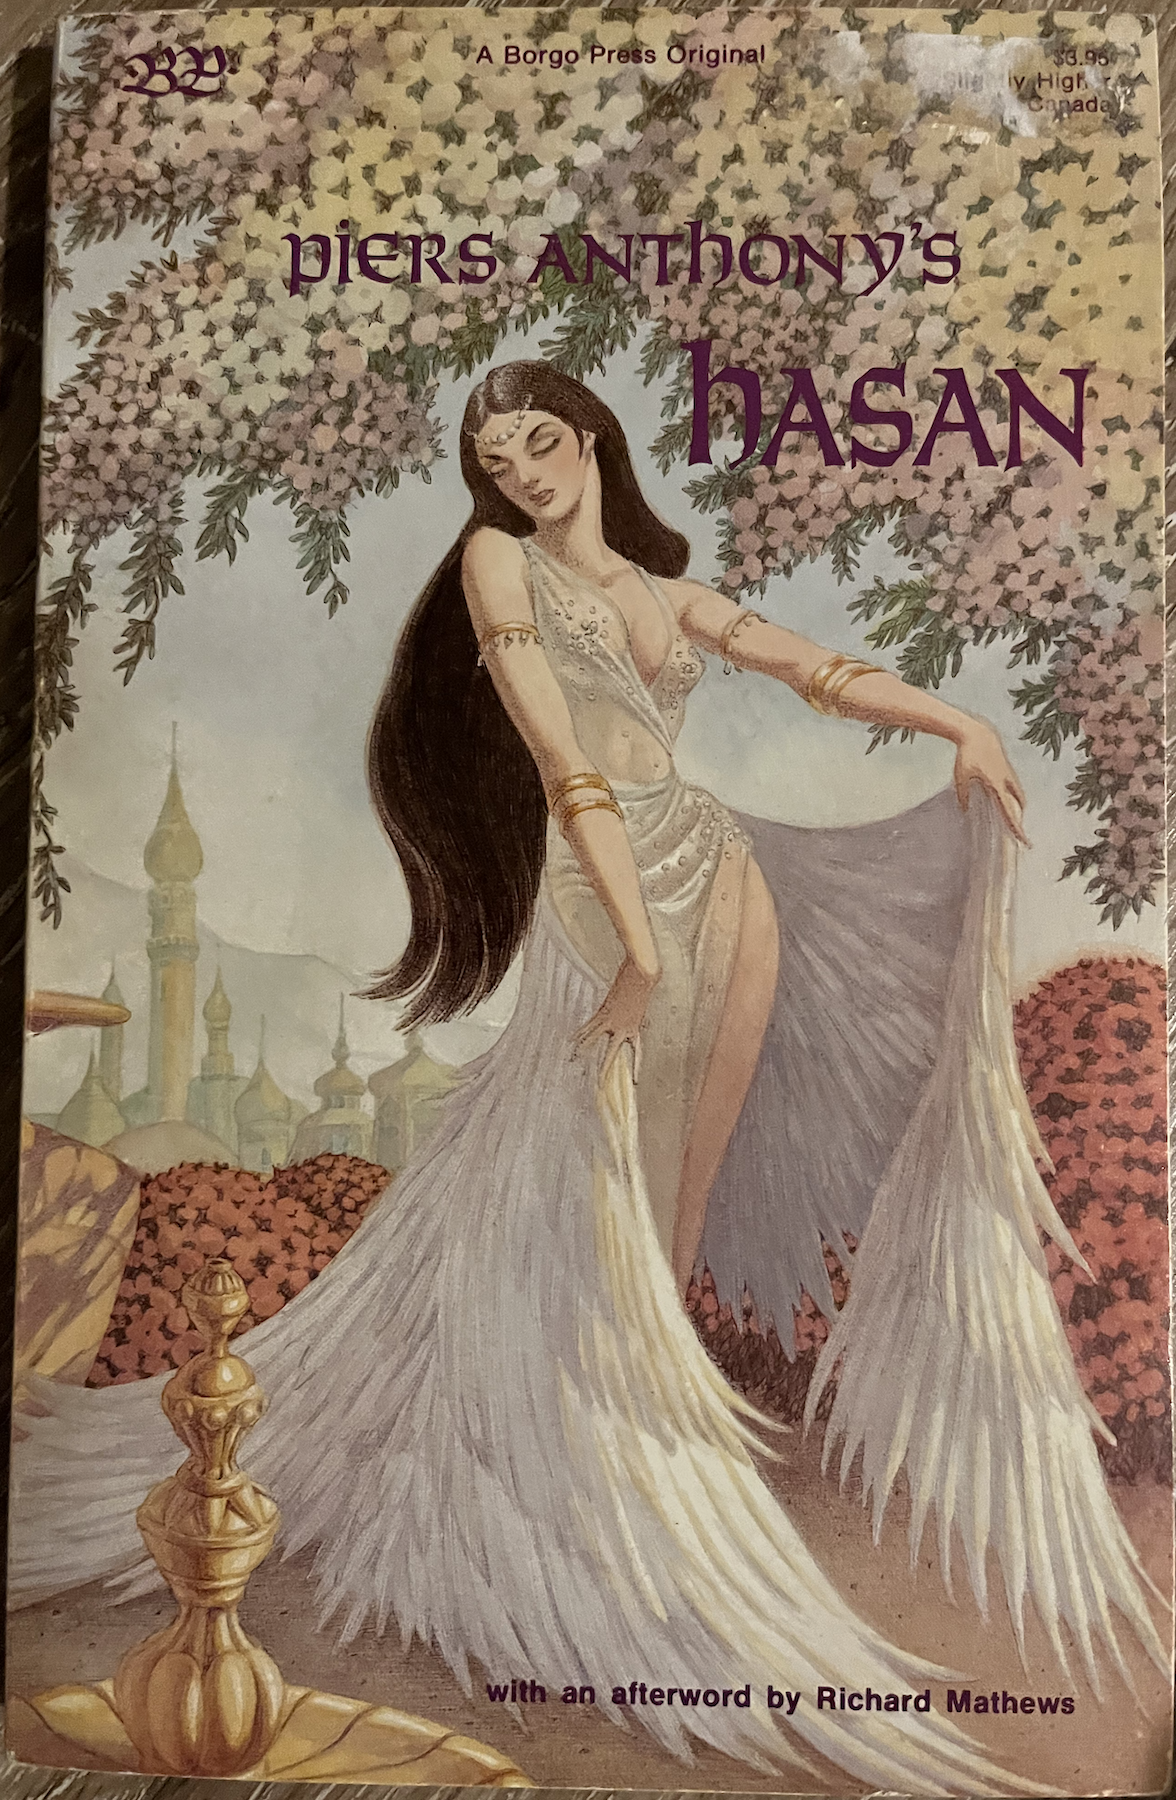 Hasan paperback